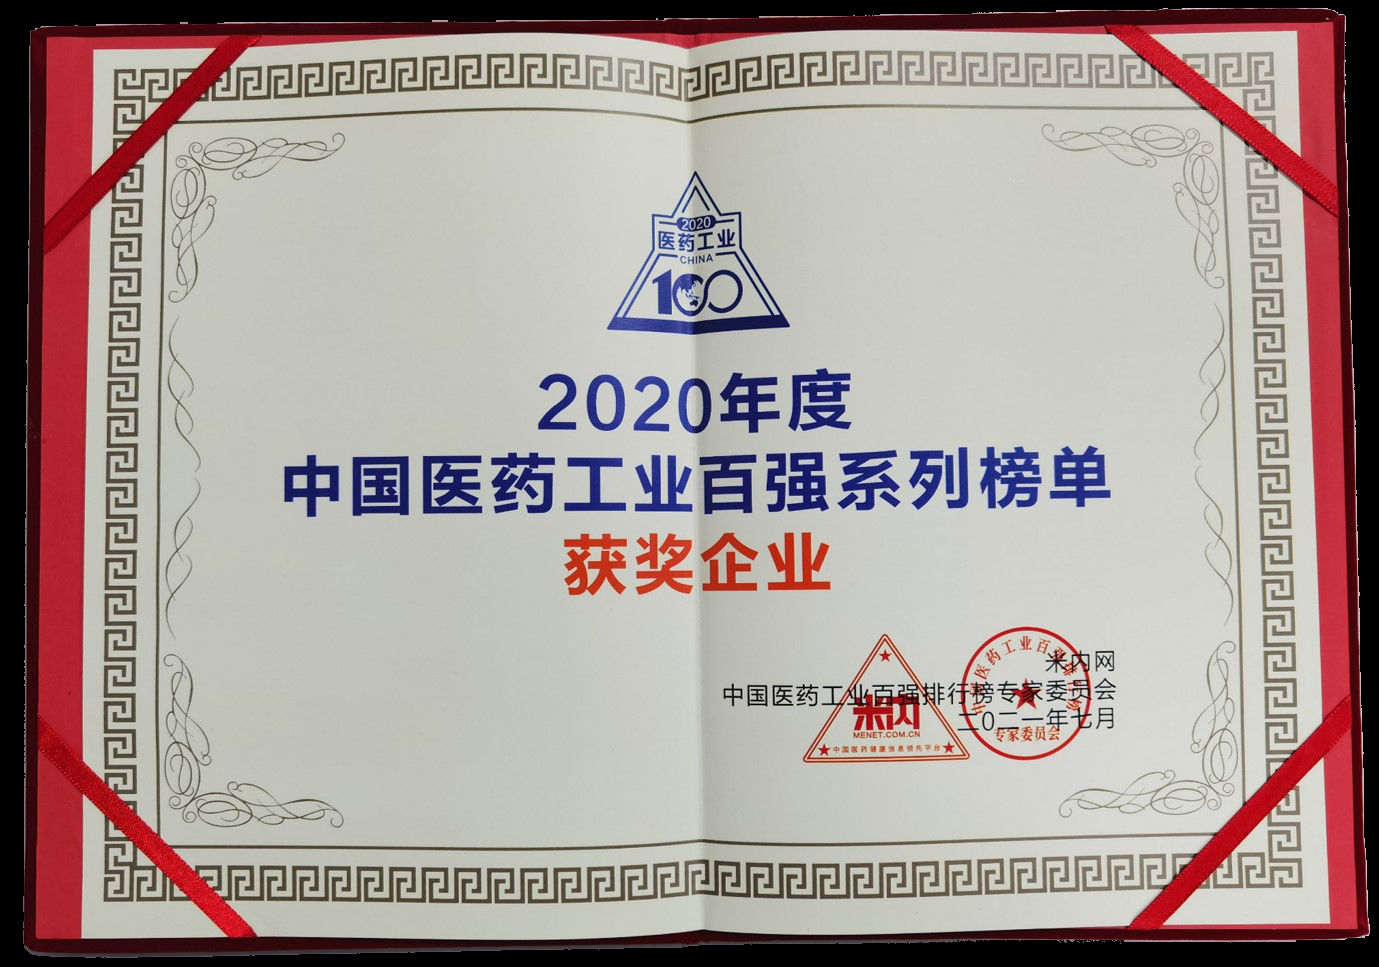 2020年度中国医药工业百强系列榜单